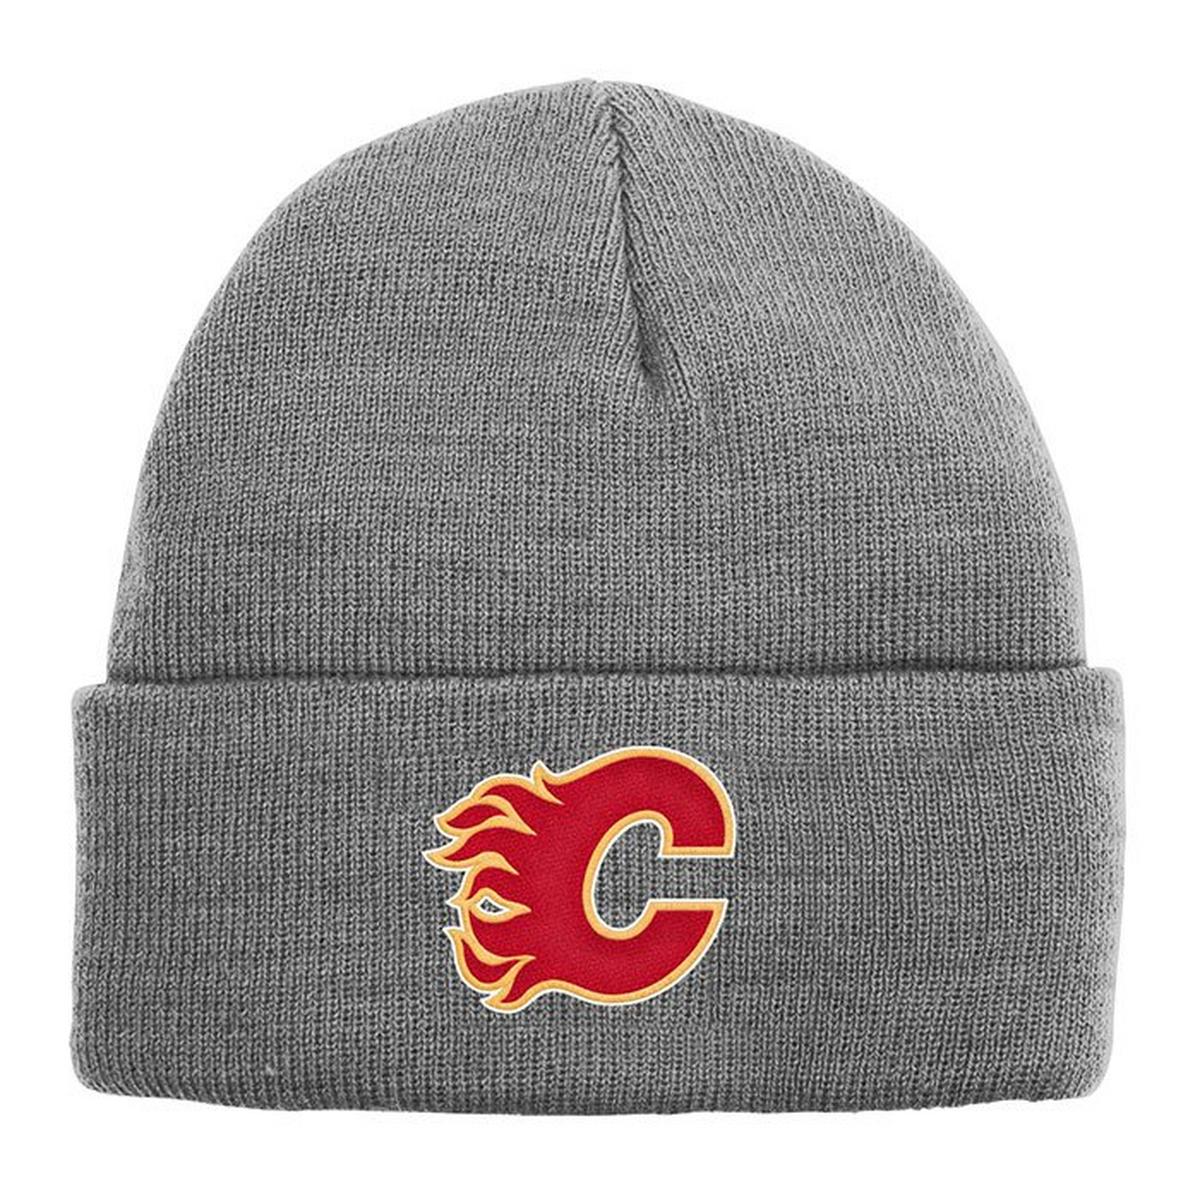 Tuque Calgary Flames en tricot chiné pour juniors [8-20]